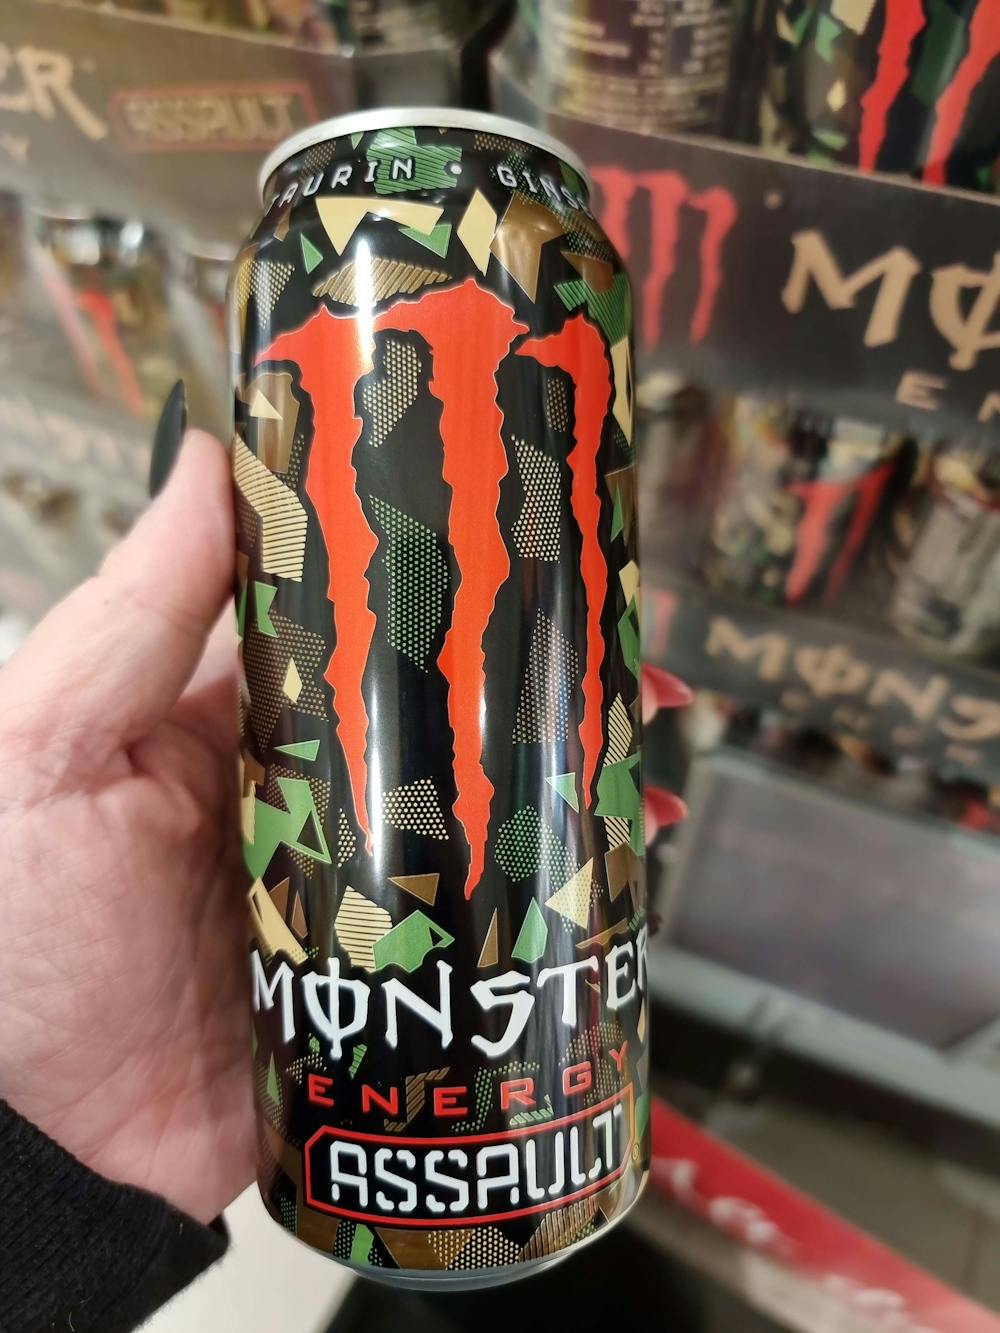 Monster Energy Assault Energy Drink